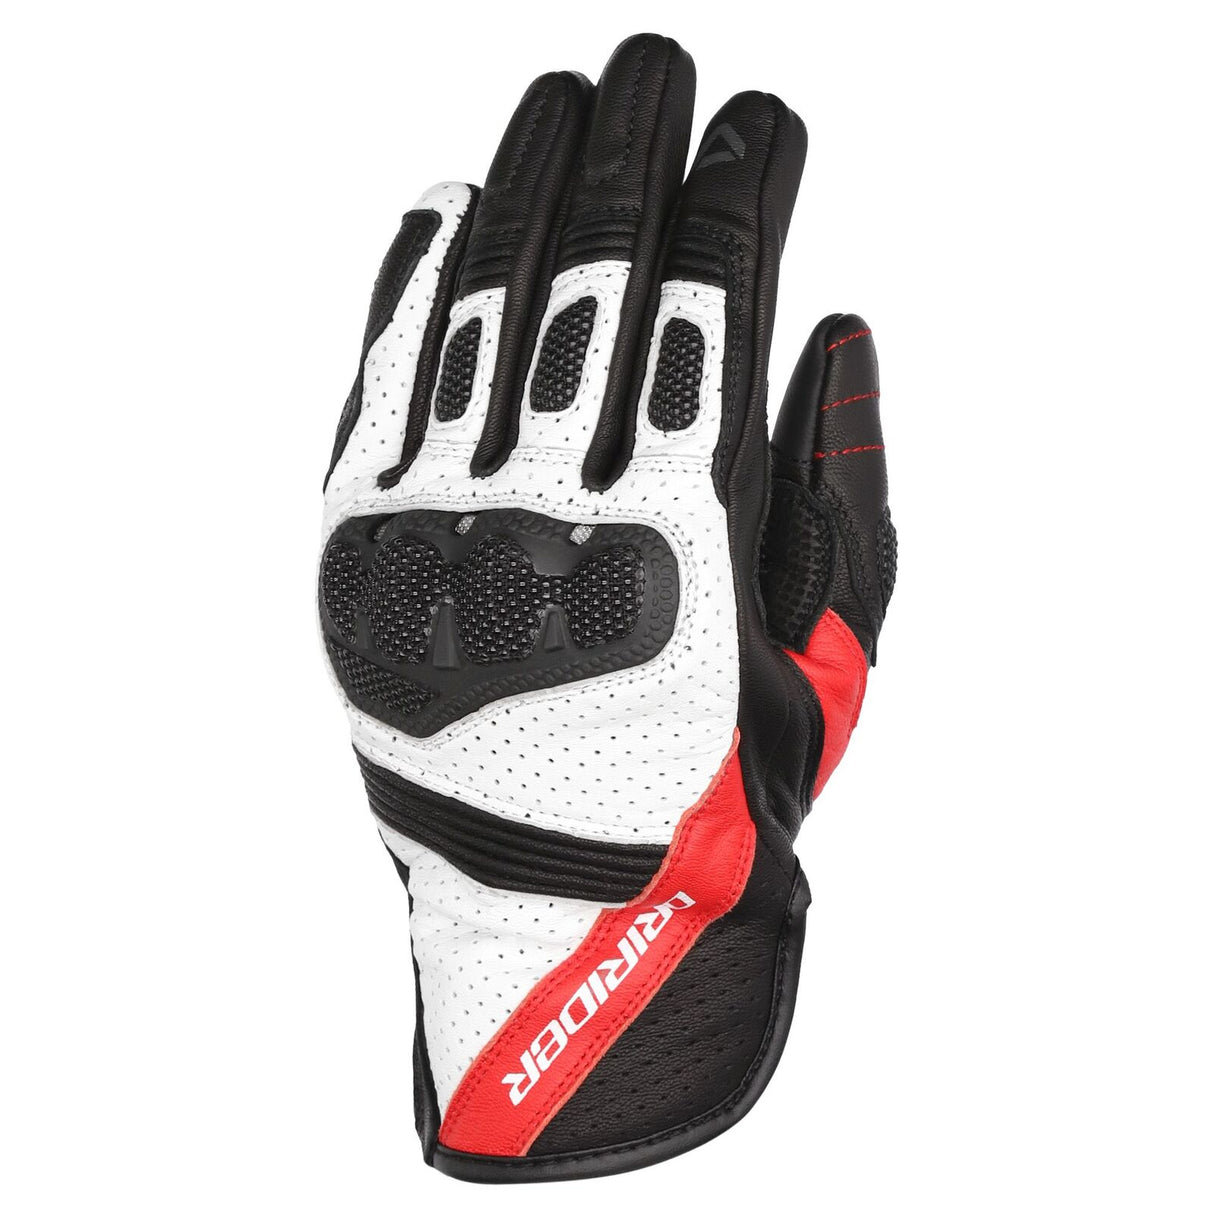 Dririder Covert Gloves - Black/White/Red